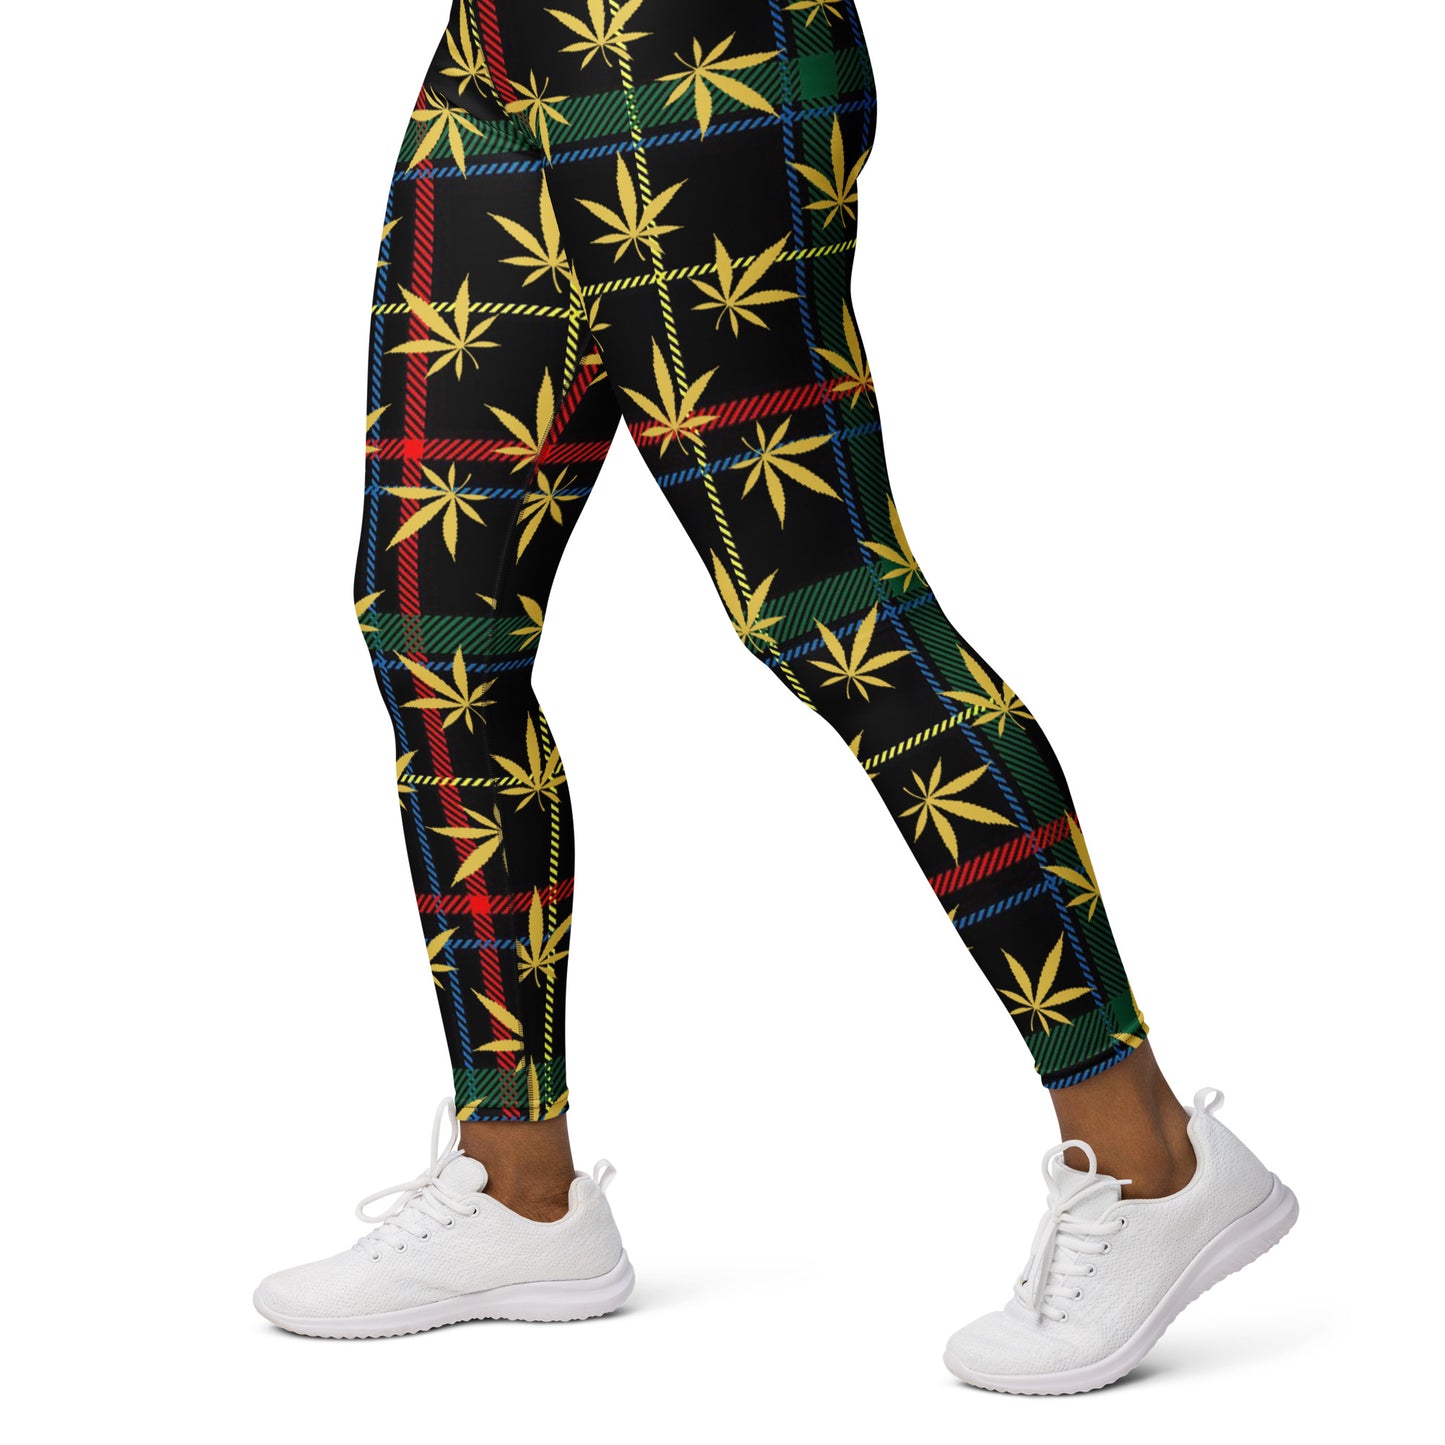 Gold Cannabis Leaf Plaid Yoga Leggings